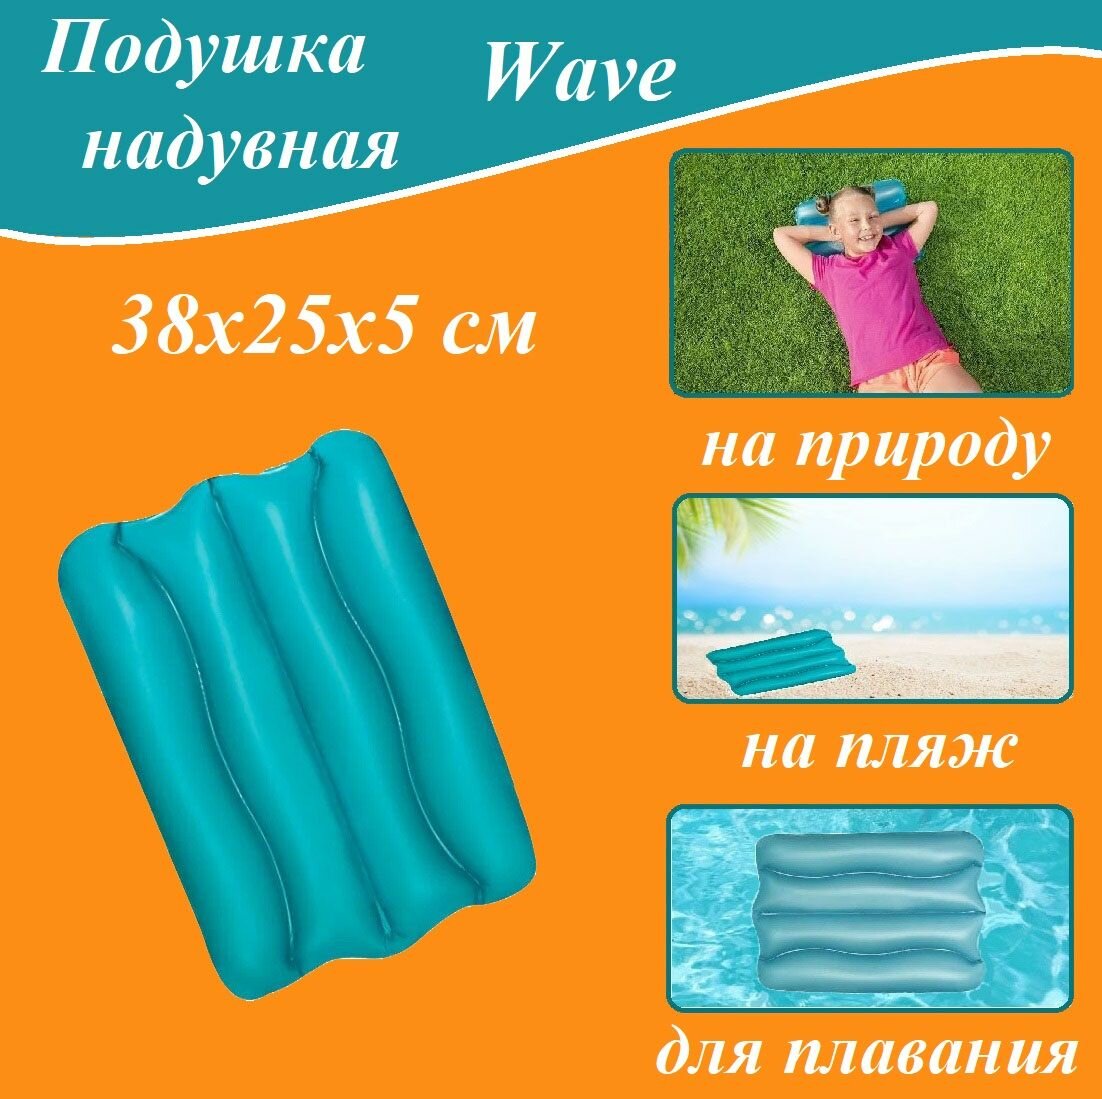 Подушка надувная Wave 38*25*5 см для плавания, на природу, на пляж Bestway (52127)